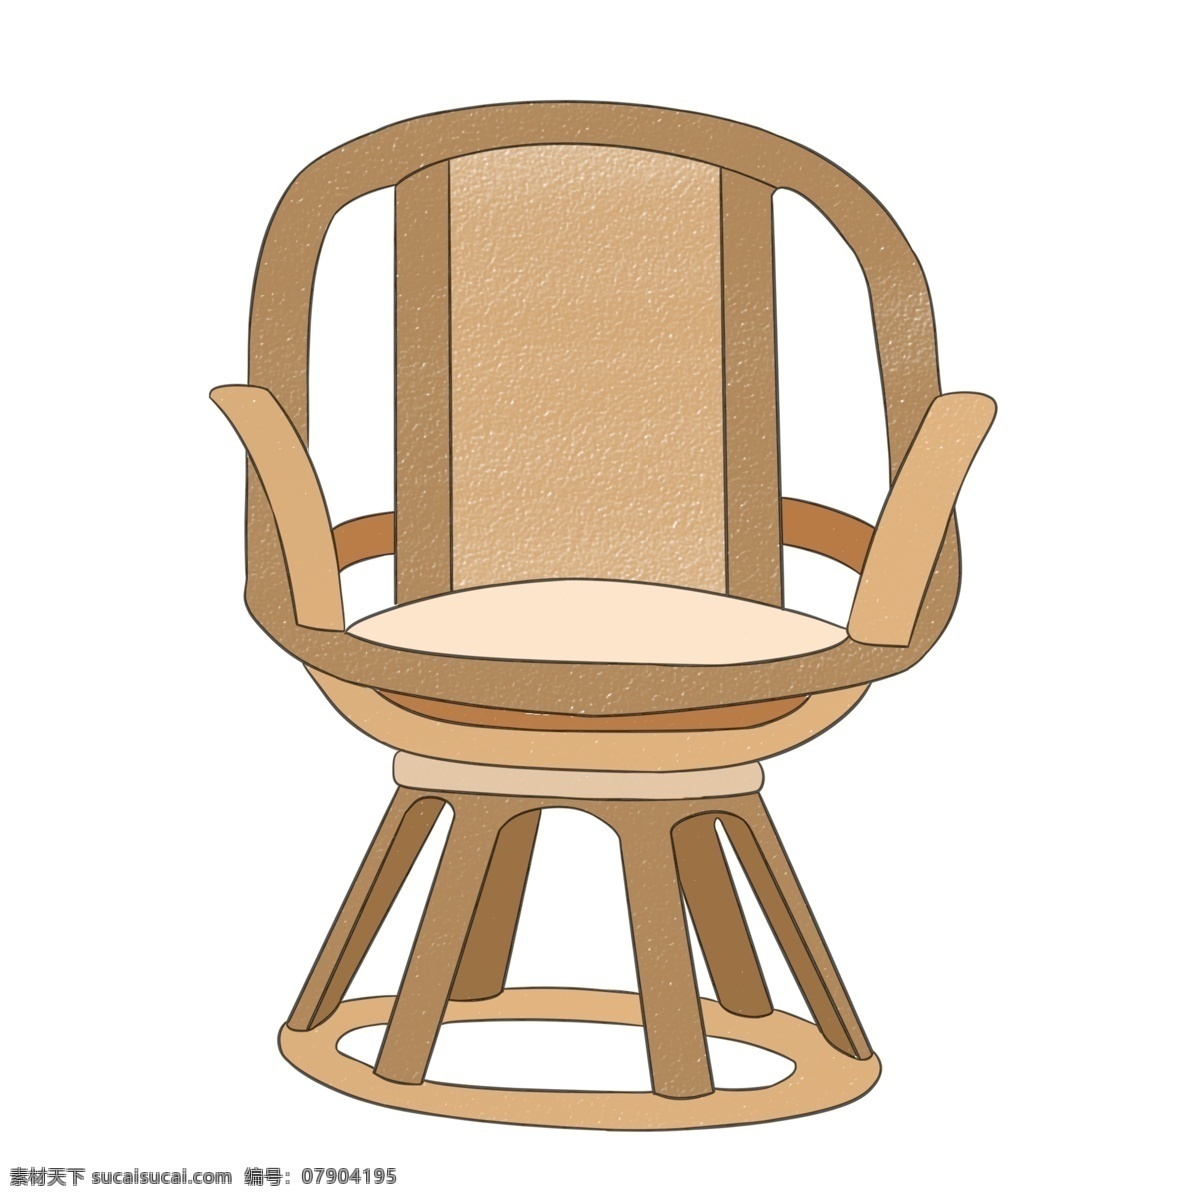 手绘 漂亮 椅子 插画 卡通椅子 家具 家居 凳子 座椅 手绘椅子 漂亮的椅子 转椅插画 棕色椅子 休闲椅子